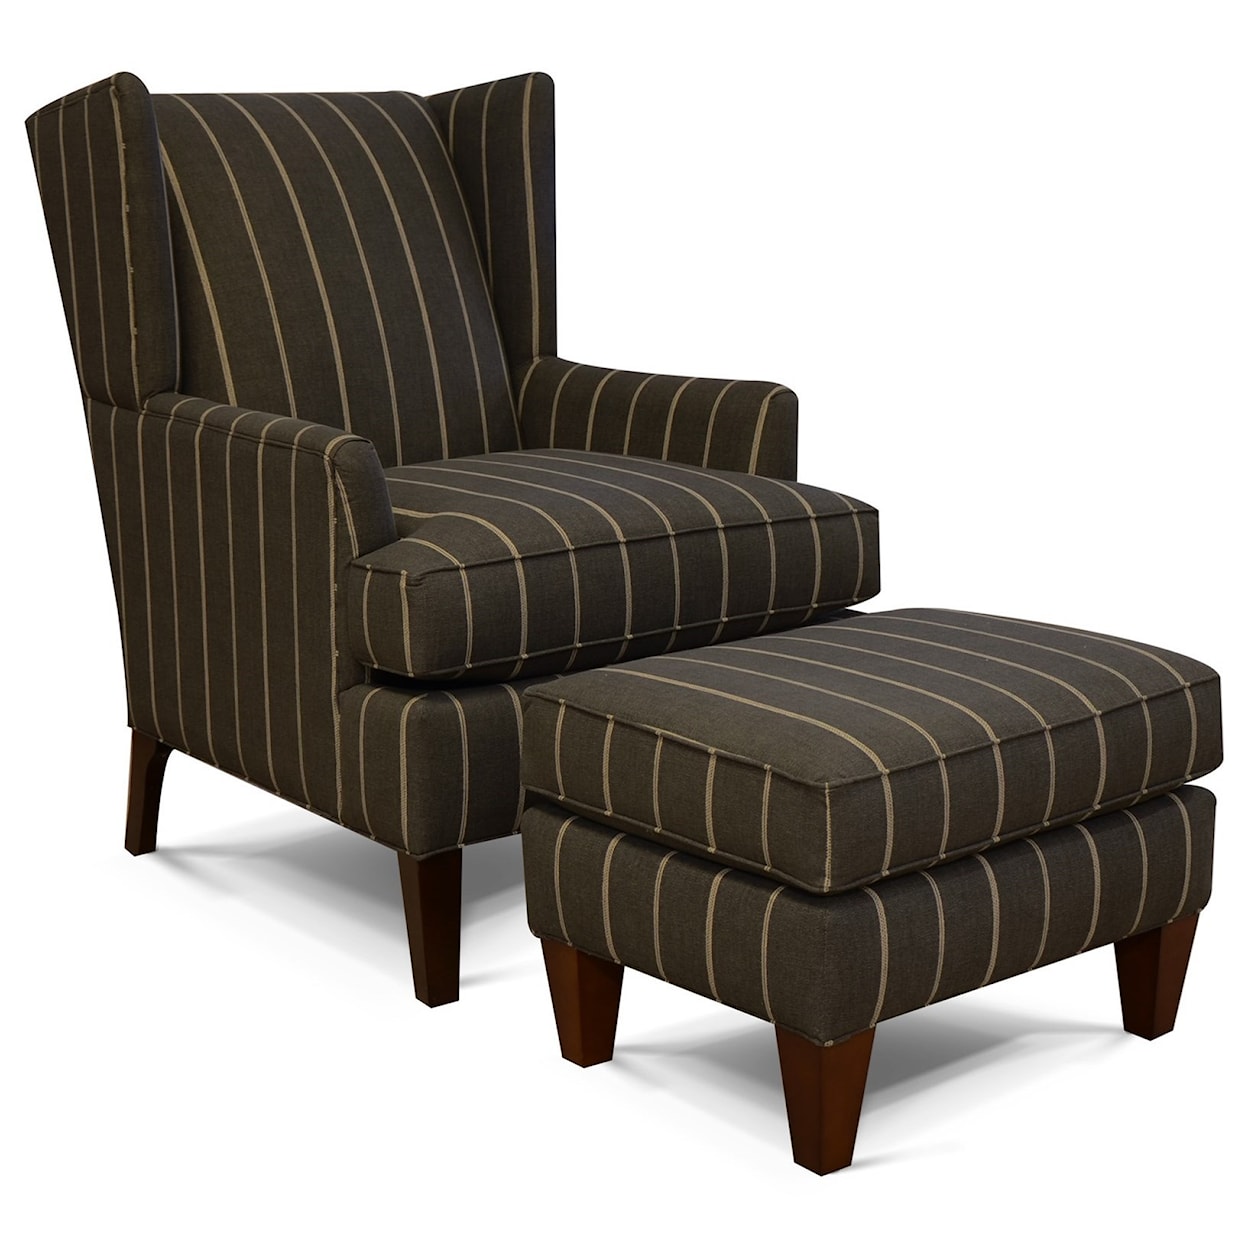 England 470/490/N Series Chair and Ottoman Set